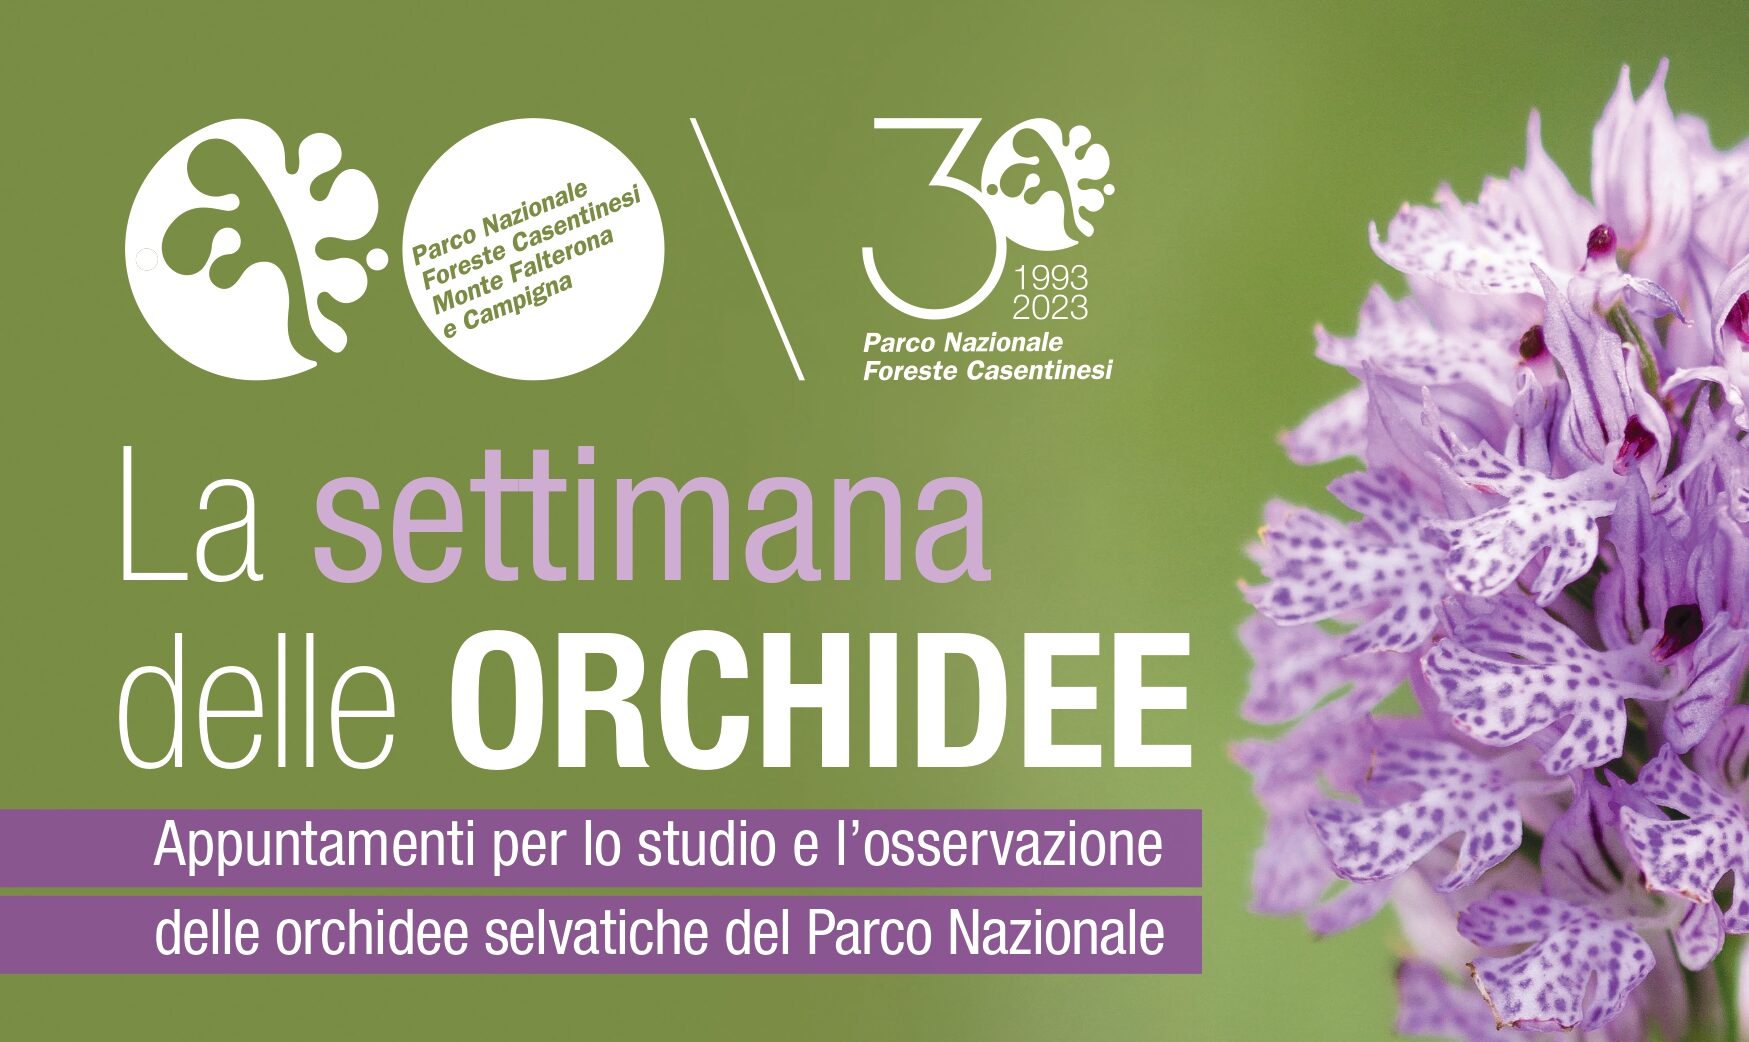 Dal 22 al 28 maggio nelle Foreste casentinesi la “Settimana delle orchidee selvatiche”